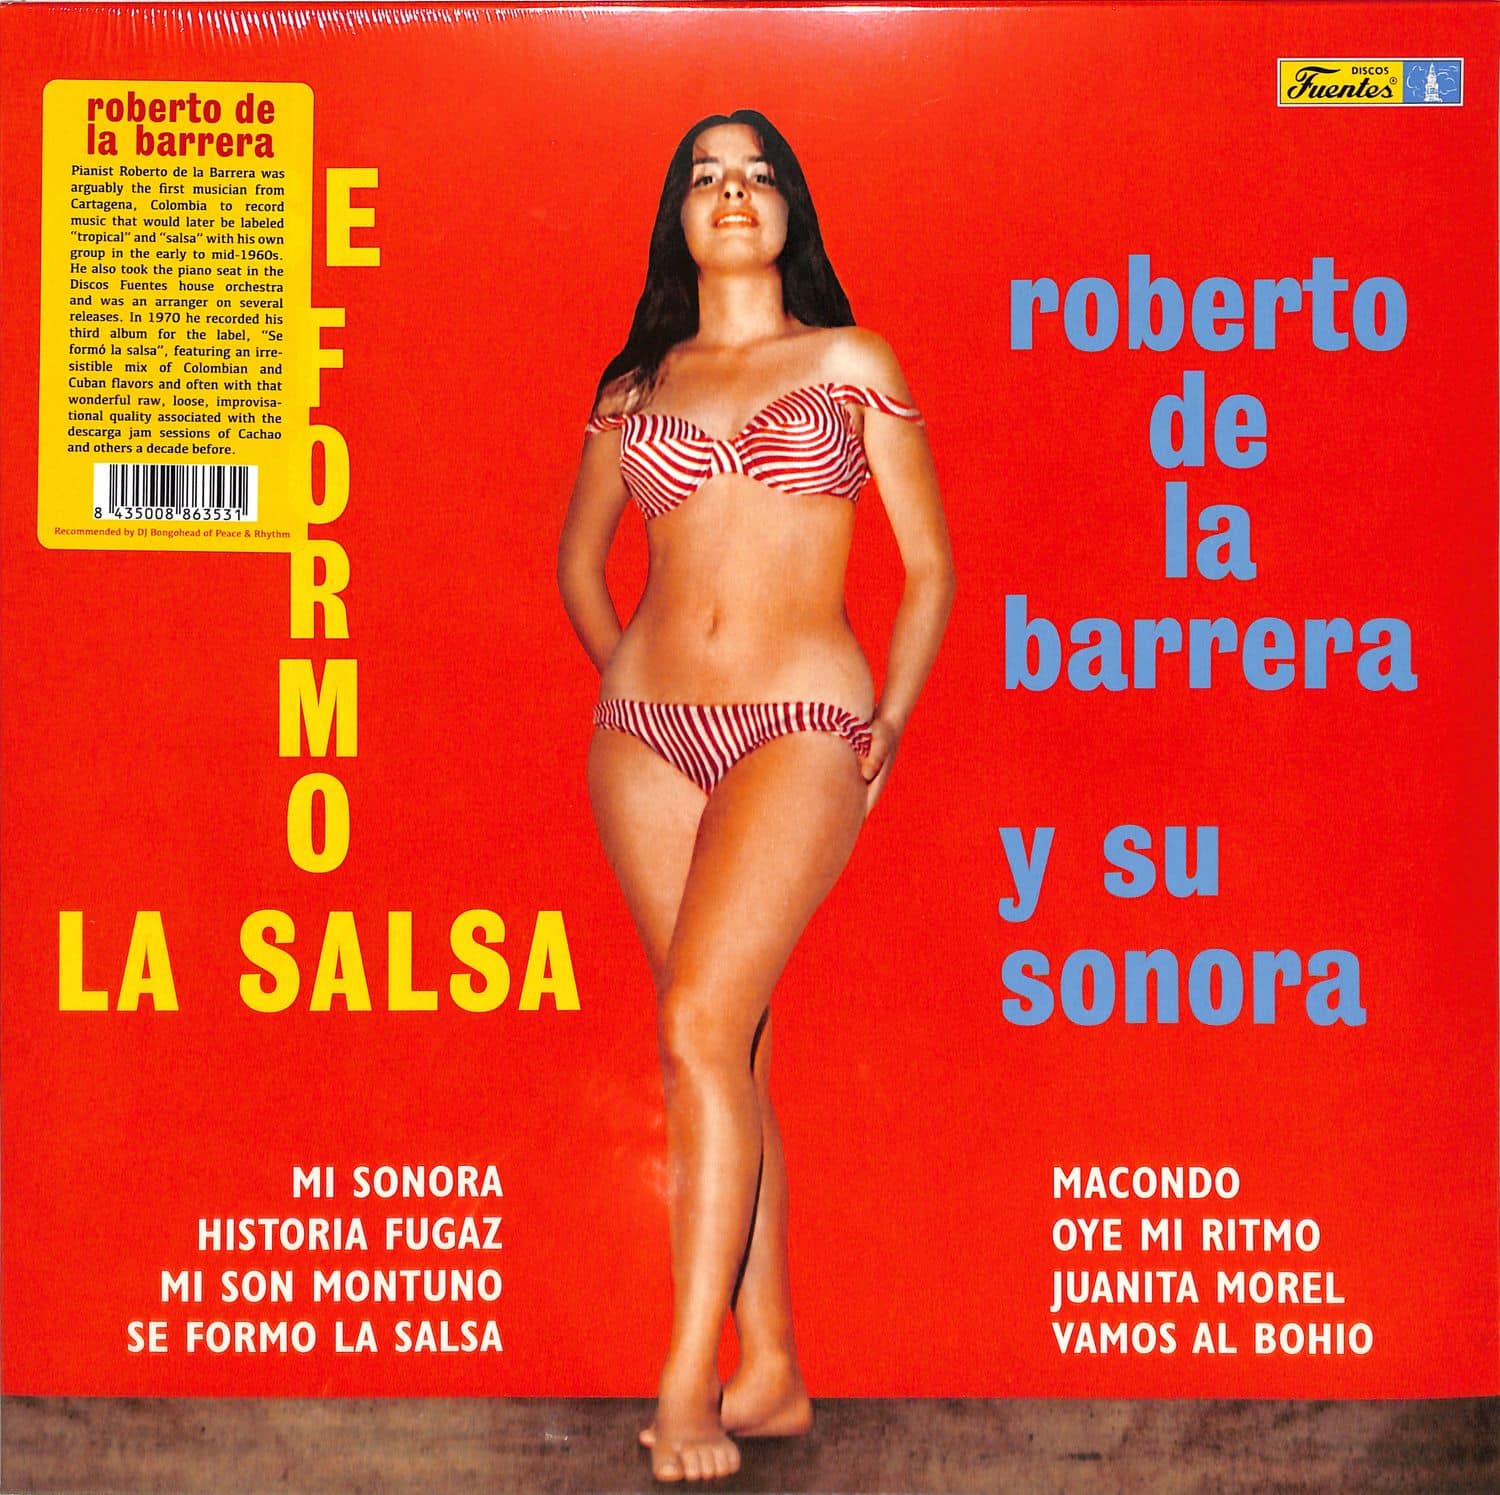 Roberto De La Barrera Y Su Sonora - SE FORMO LA SALSA 